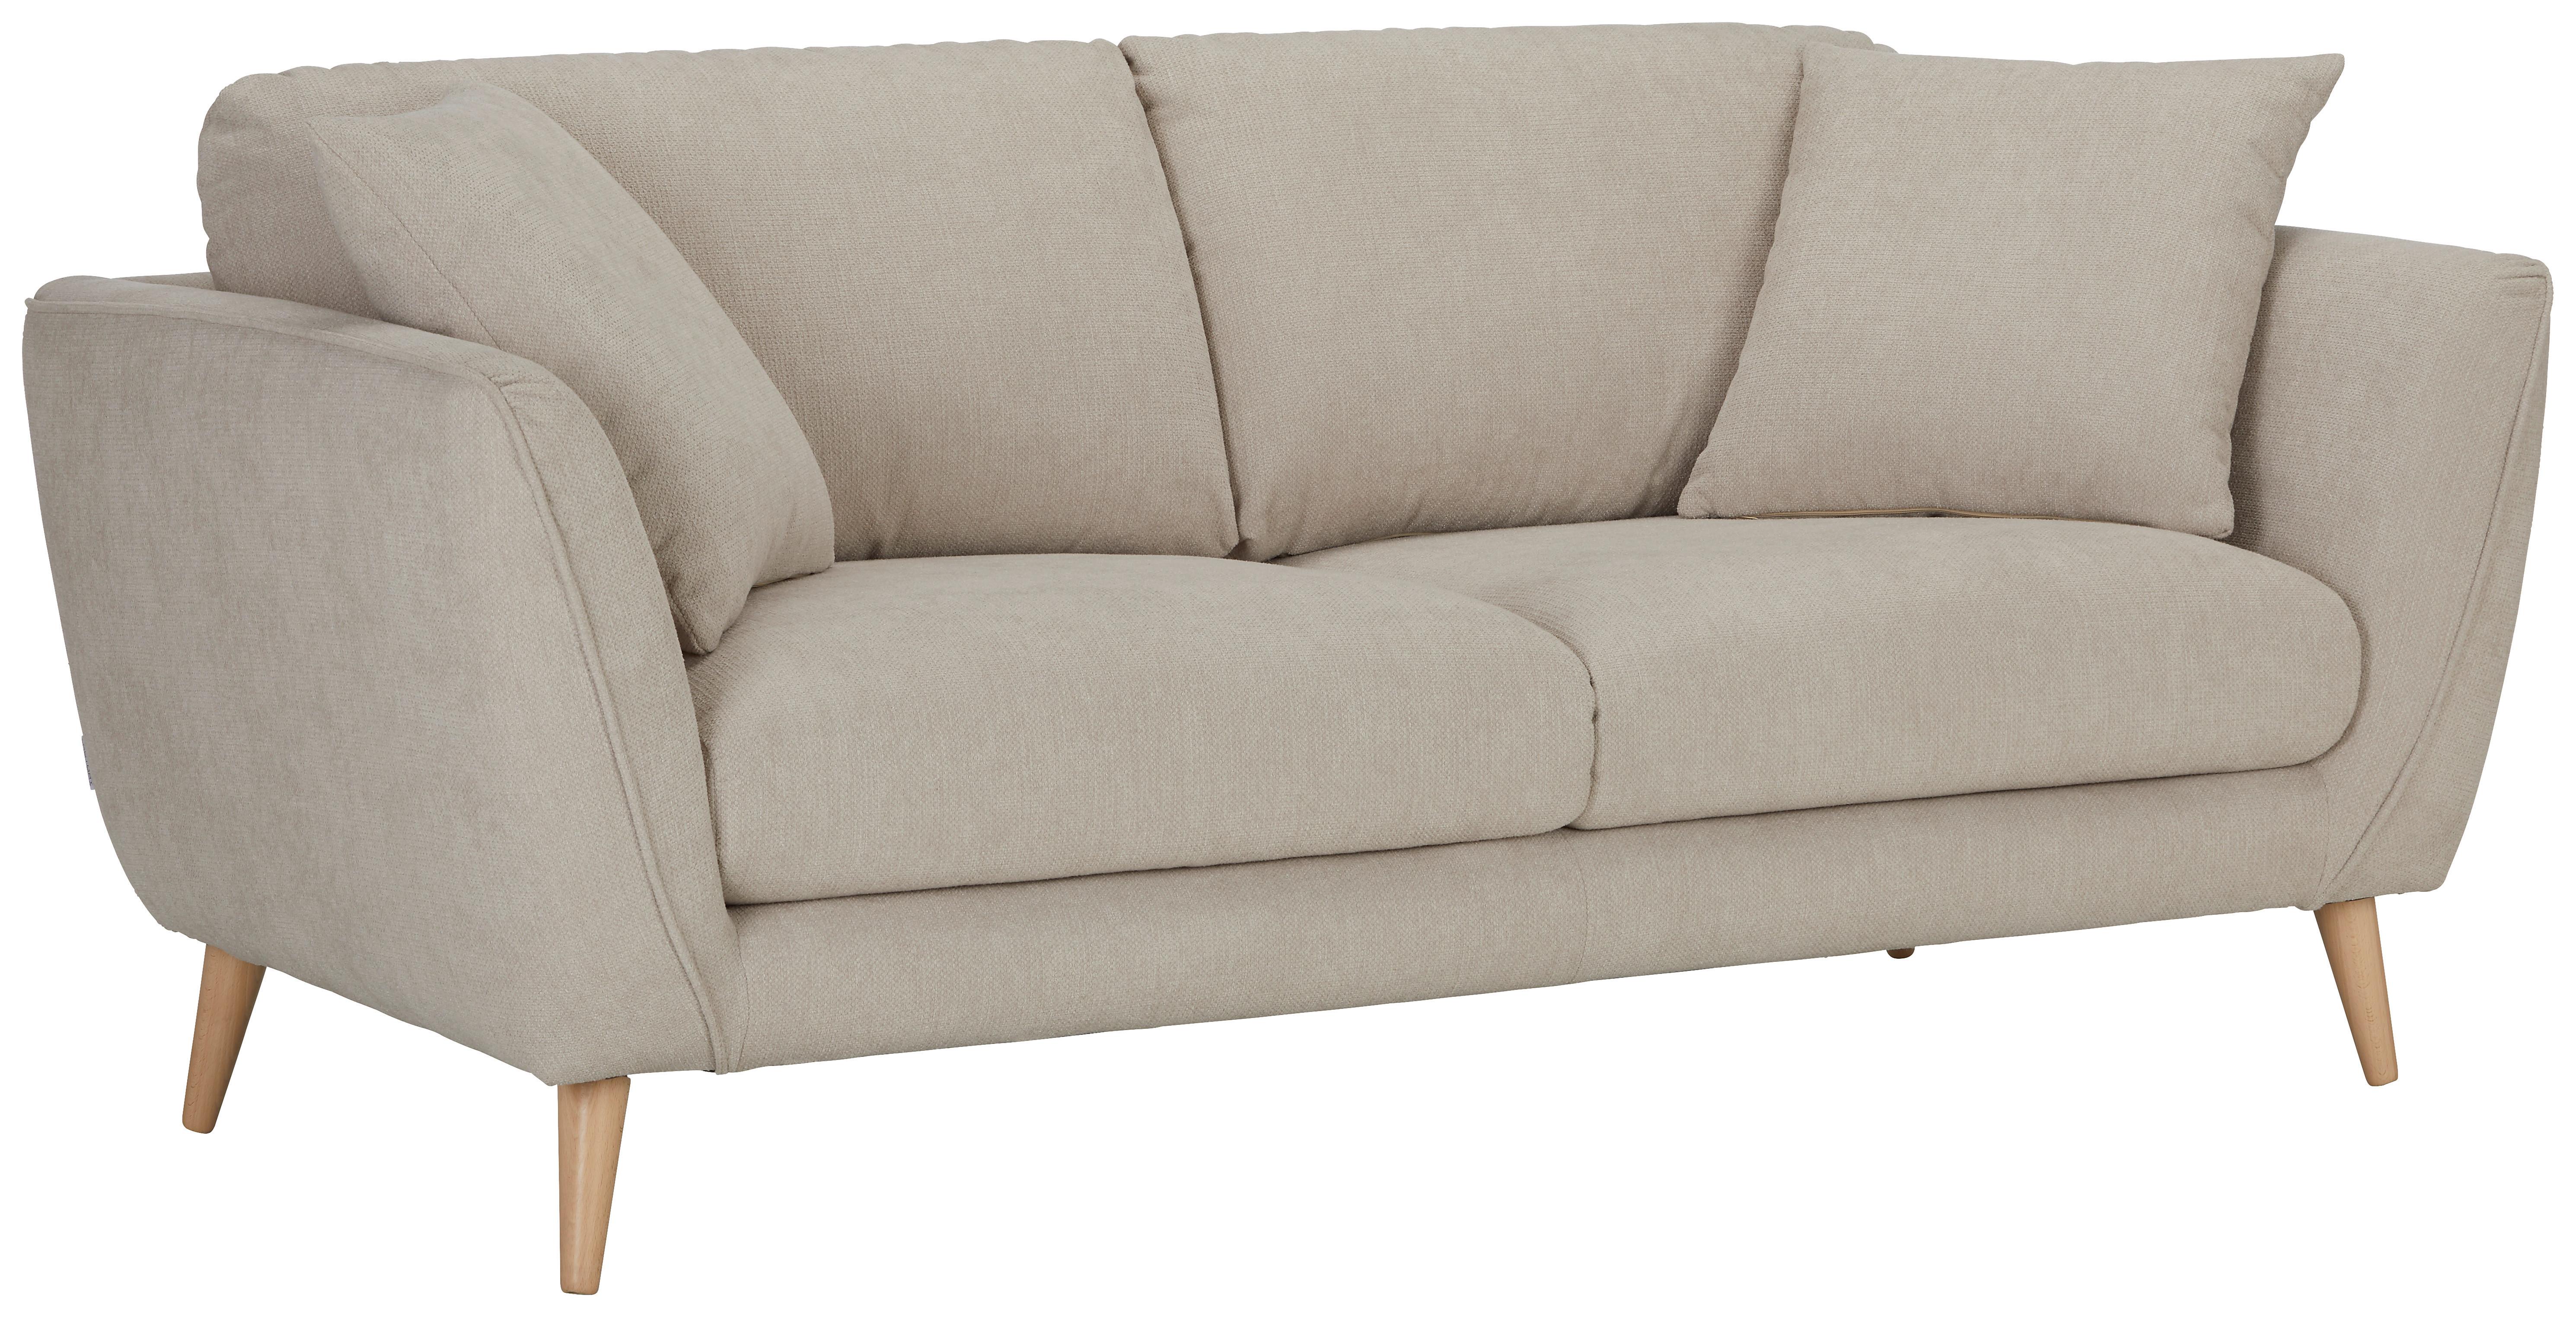 Zweisitzer-Sofa in Beige - Beige/Naturfarben, Konventionell, Textil (190/70/47/97cm) - Zandiara